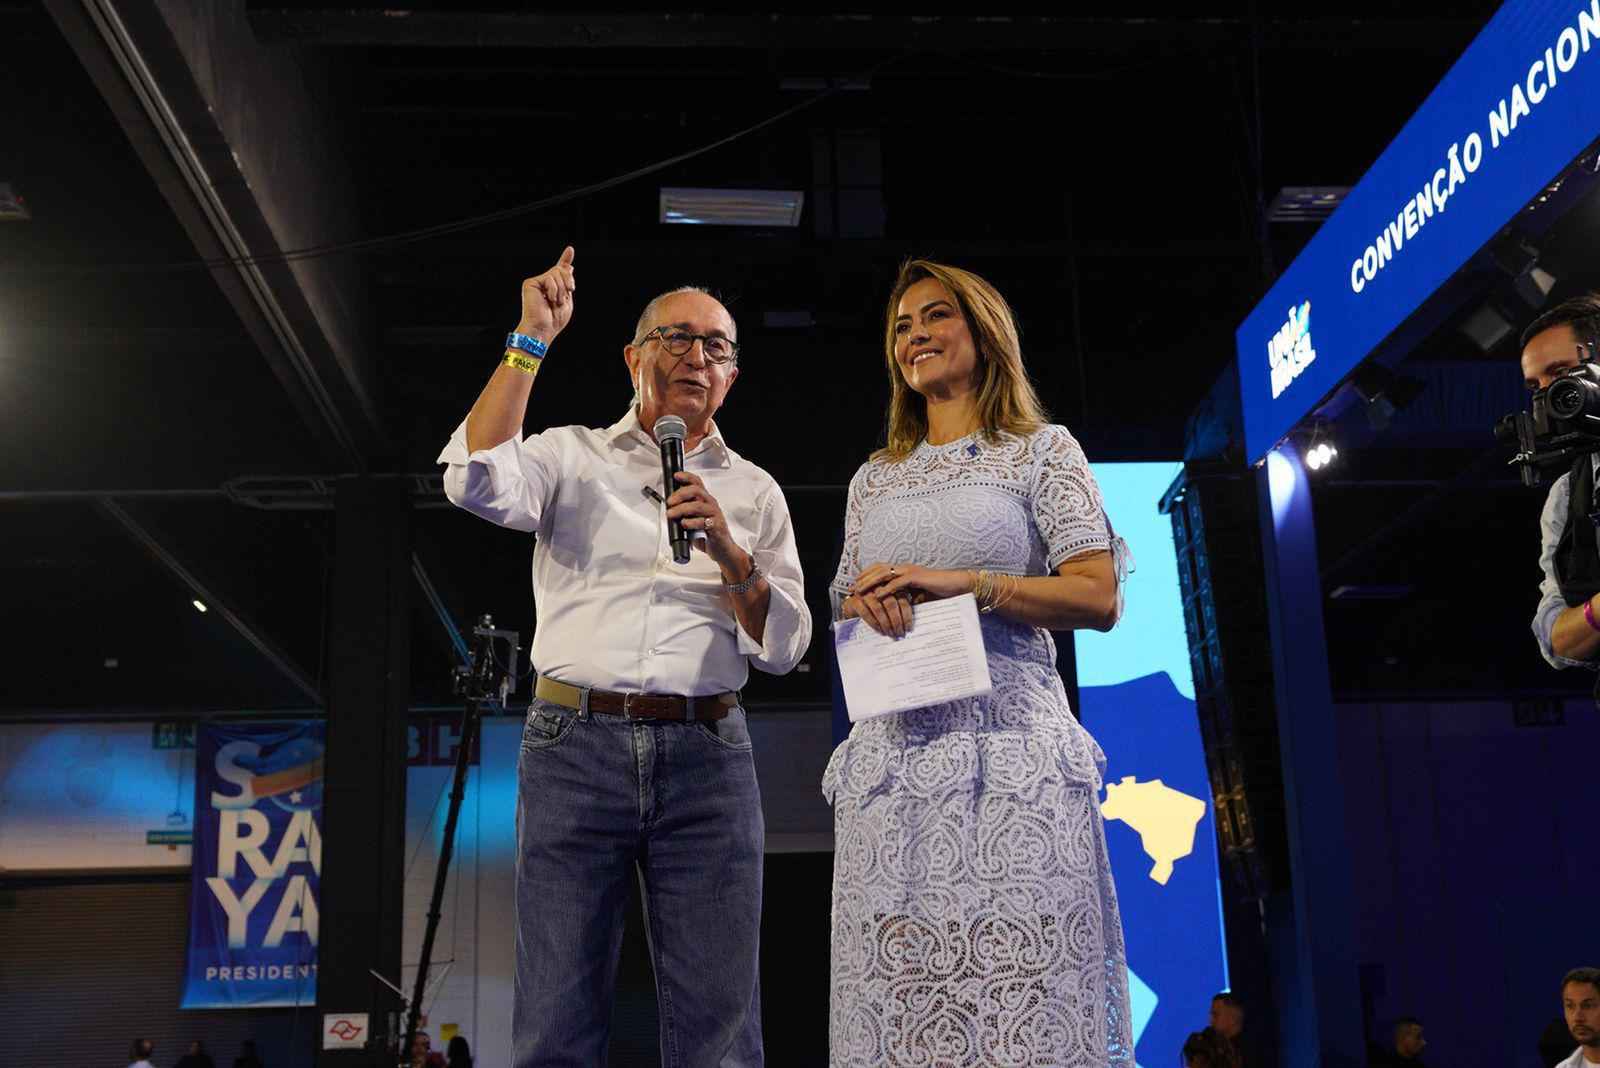 Vice de Soraya Thronicke critica Bolsonaro, mas votaria nele em 2º turno - UNIÃO BRASIL/REPRODUÇÃO